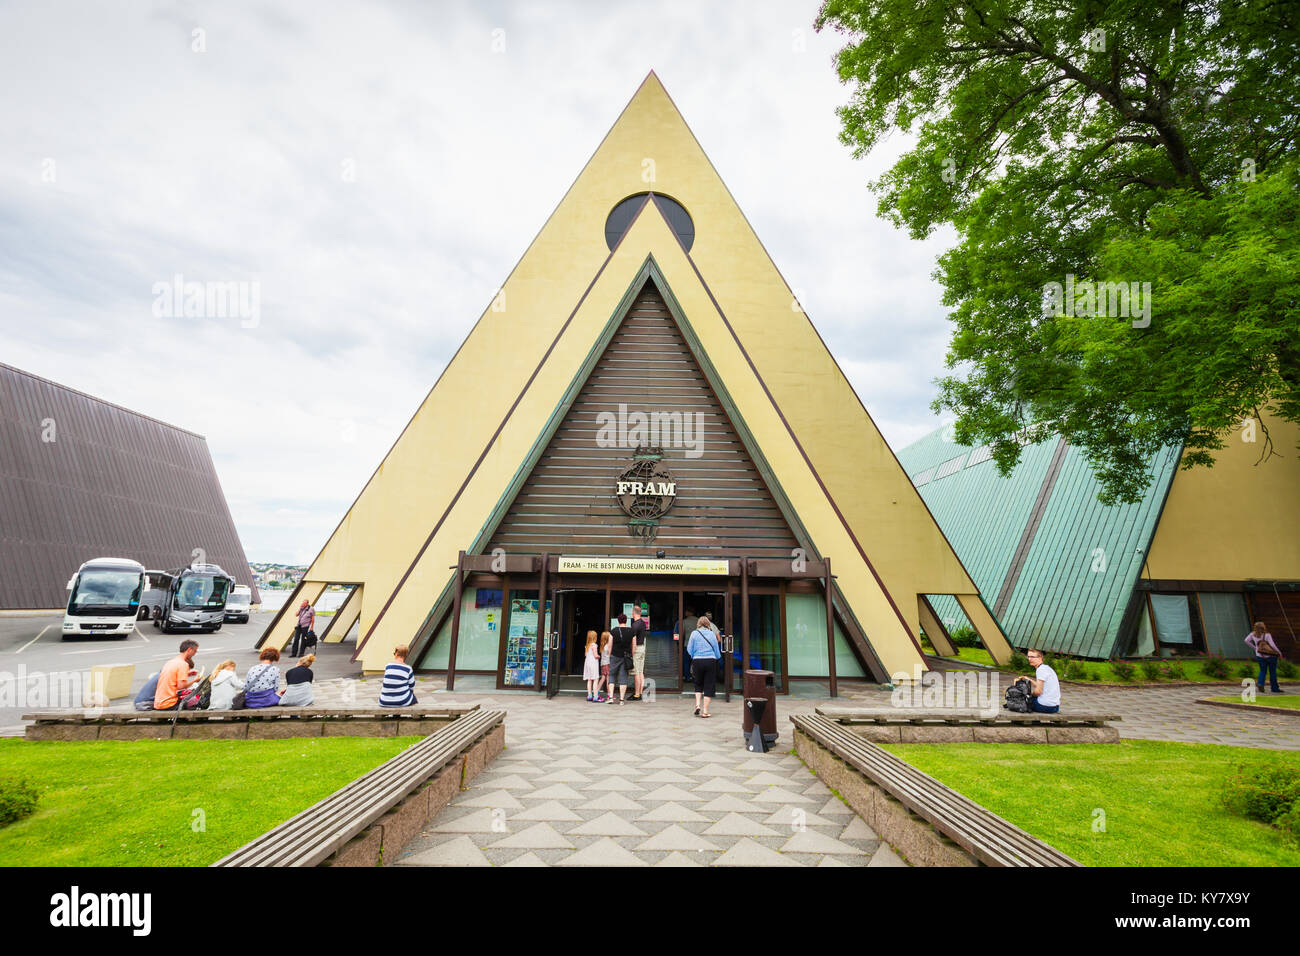 OSLO, Norwegen - 21. Juli 2017: Die Fram Museum oder Frammuseet ist ein Museum der Norwegische Polarforschung. Fram Museum auf der Halbinsel Bygdoy in Osl entfernt Stockfoto